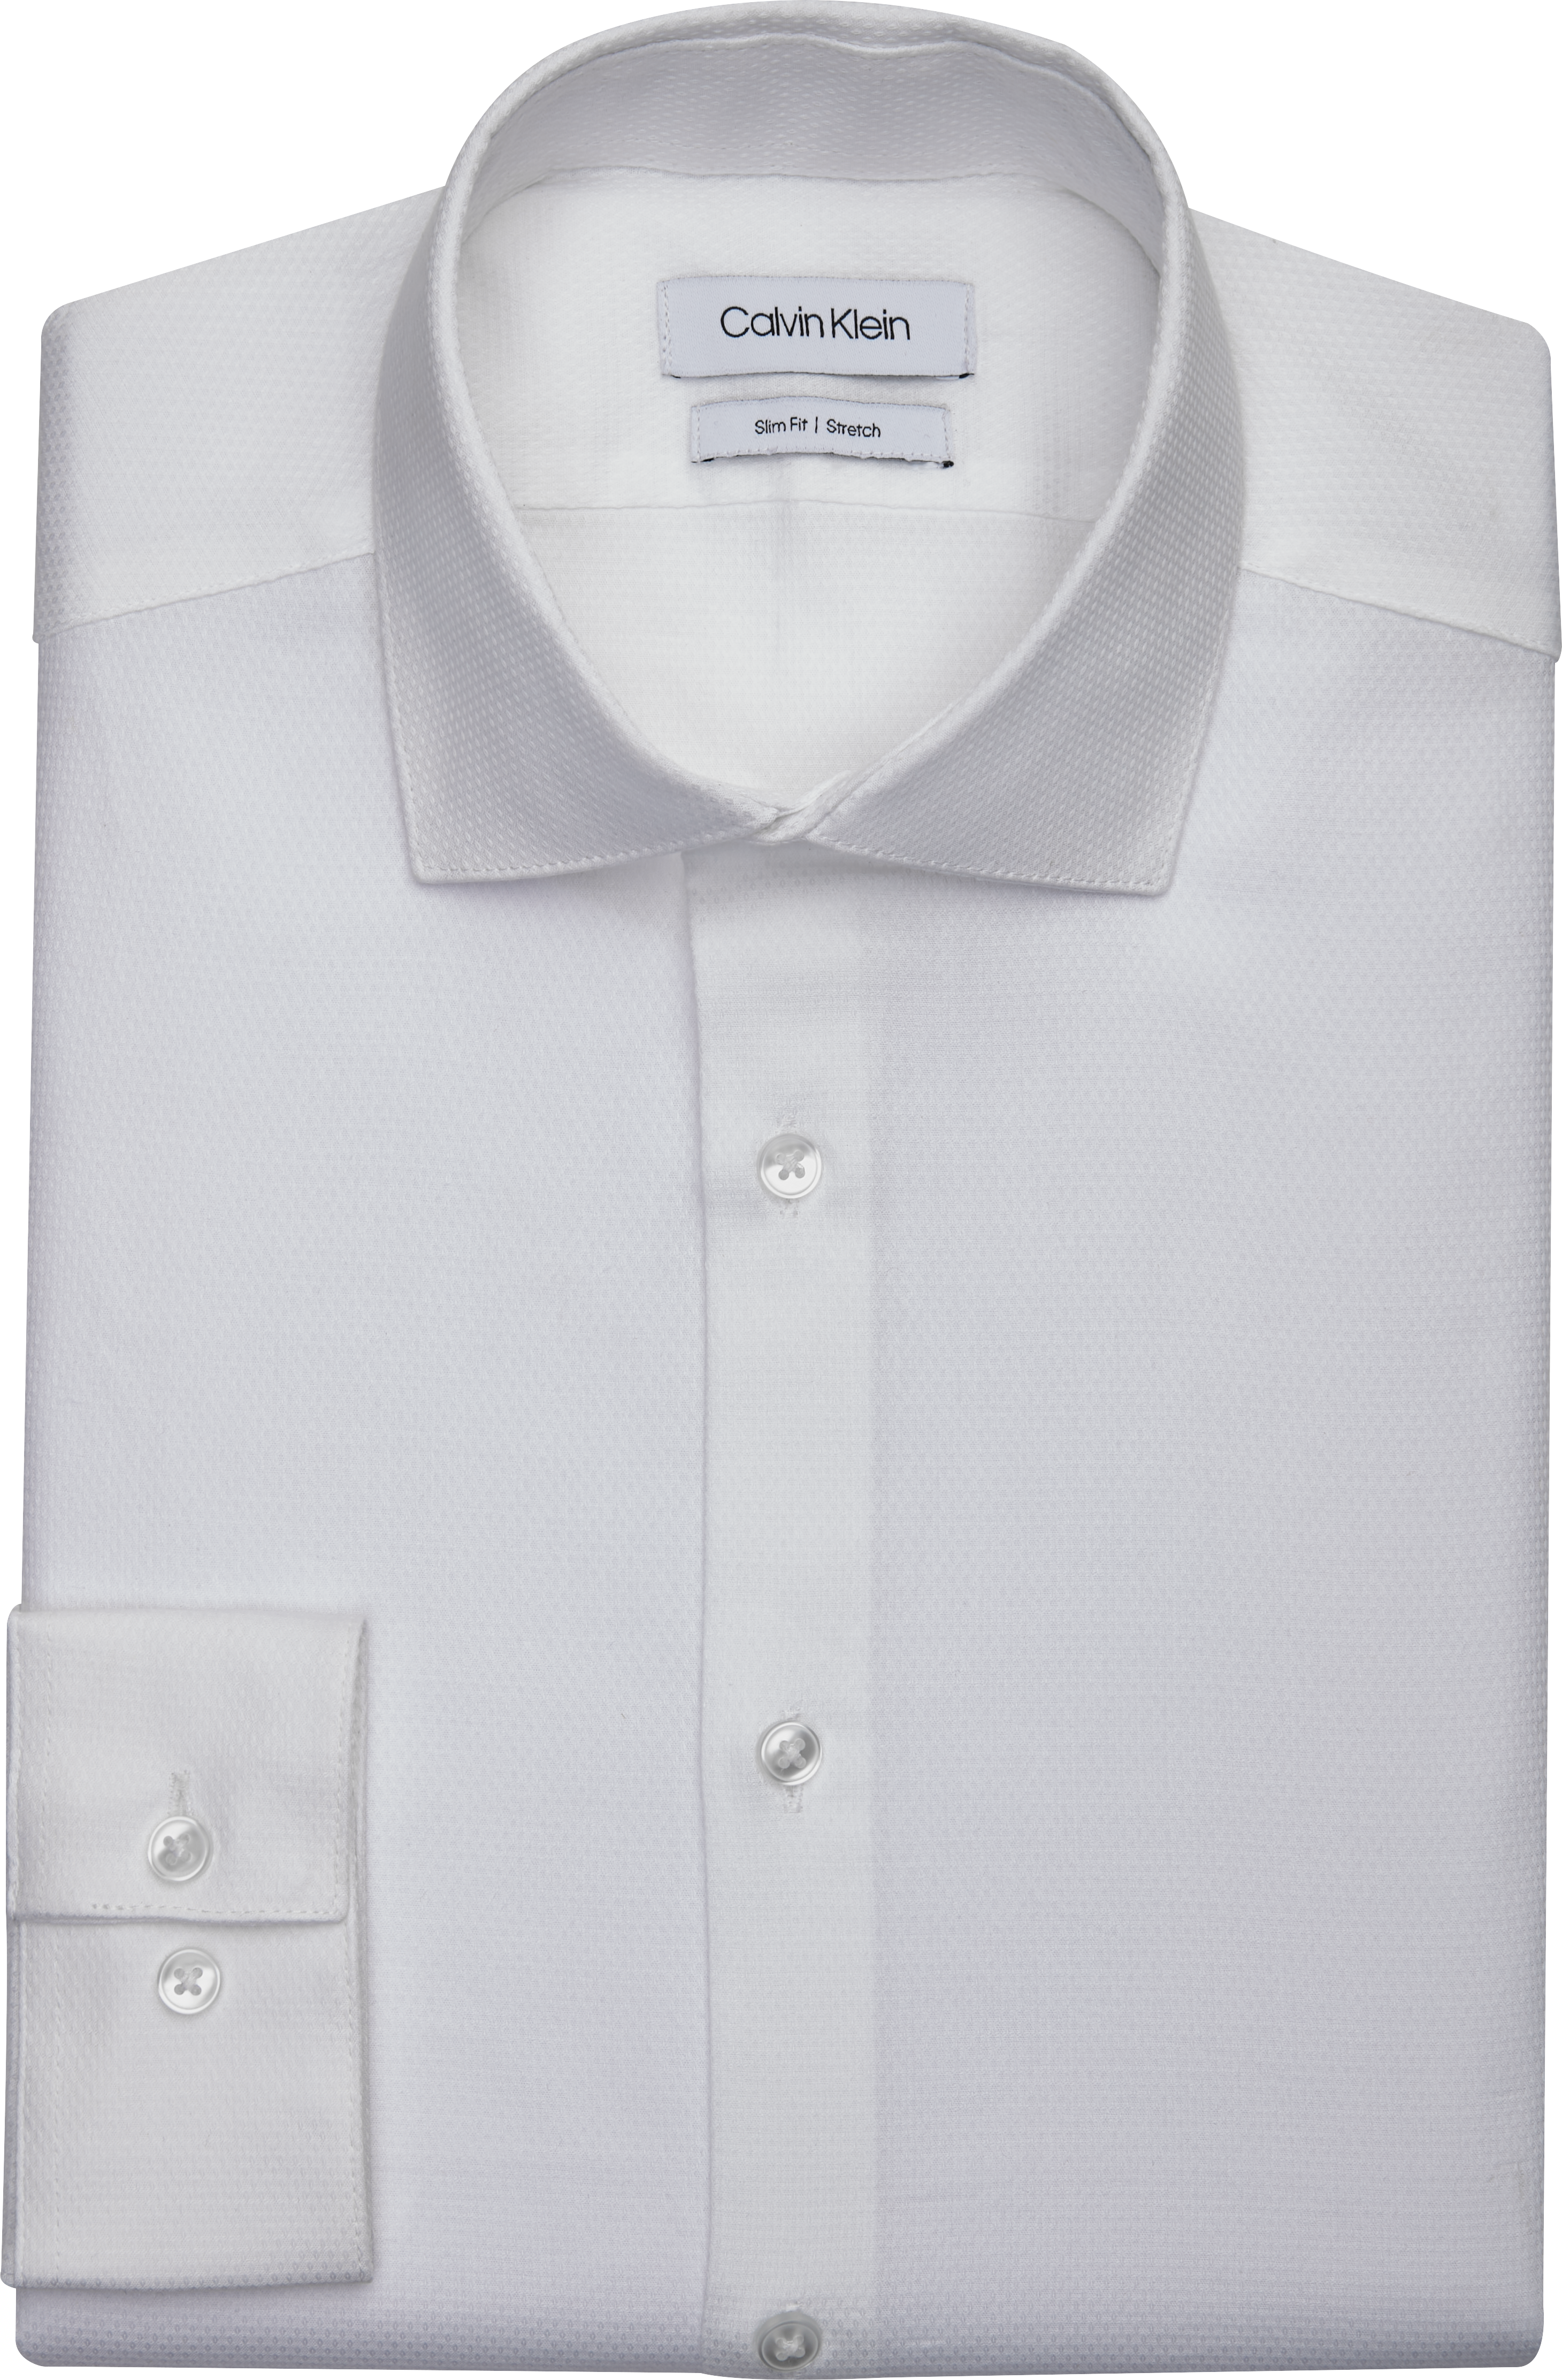 trog Geslagen vrachtwagen fontein Calvin Klein Slim Fit Dobby Weave Dress Shirt, White - Men's Featured |  Men's Wearhouse